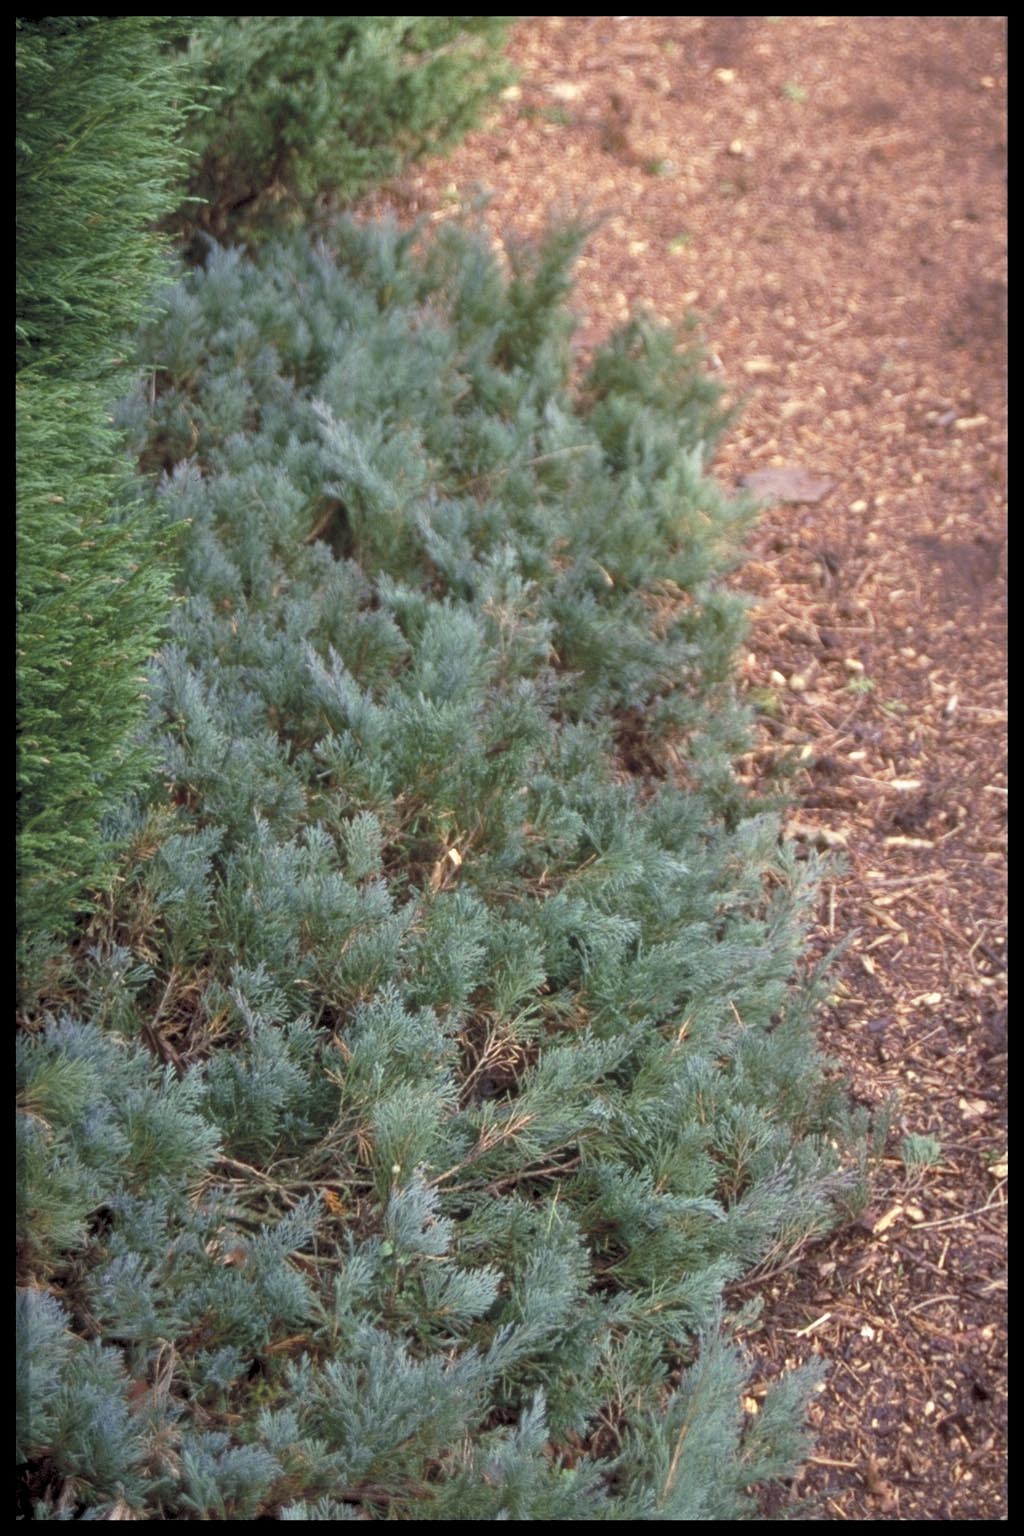 Juniperus horizontalis ‘Wiltonii’